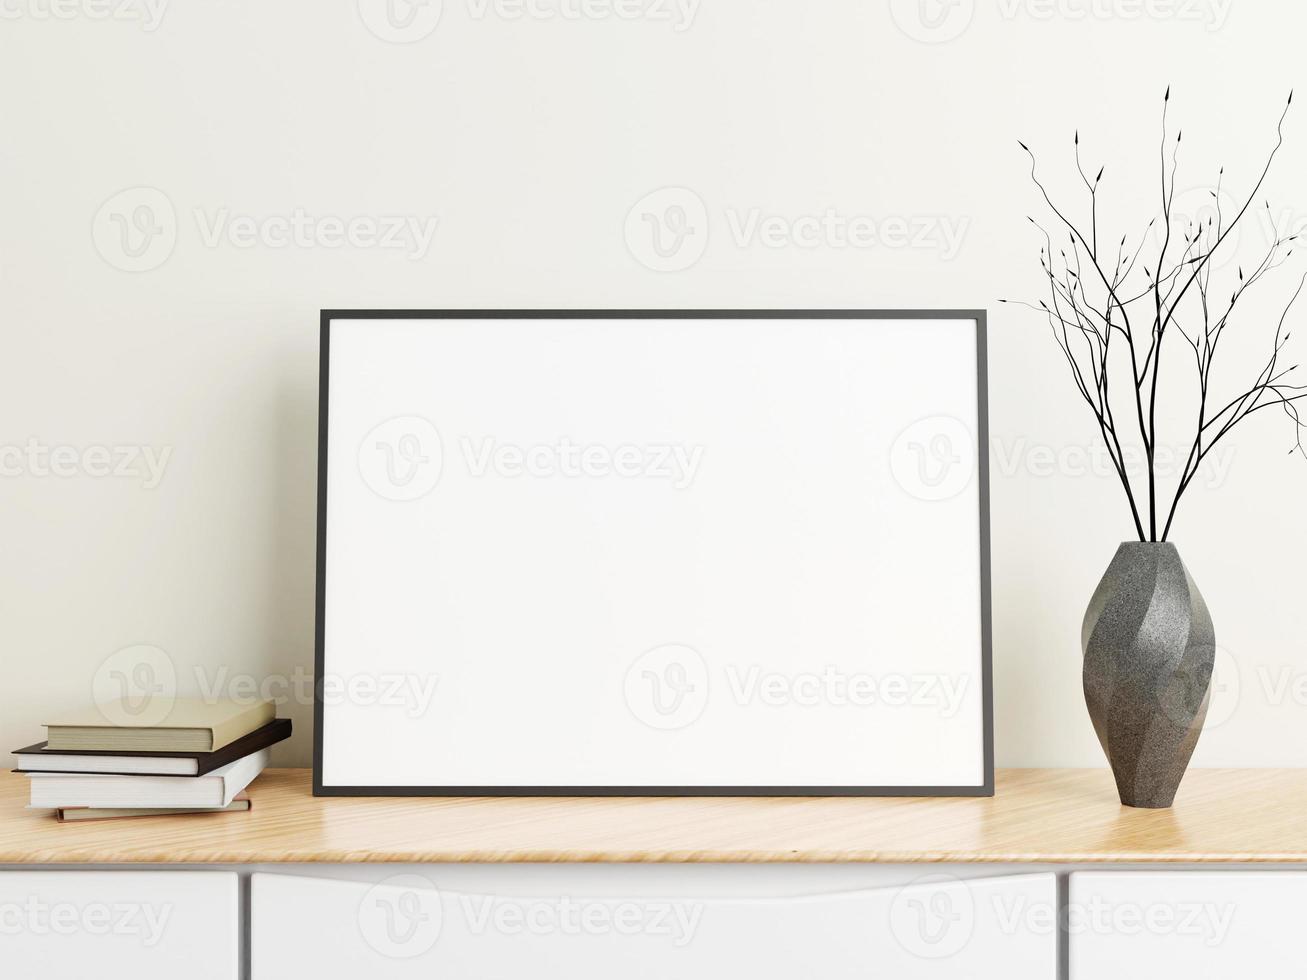 affiche noire horizontale minimaliste ou maquette de cadre photo sur table en bois avec livres et vase dans une pièce. rendu 3d.